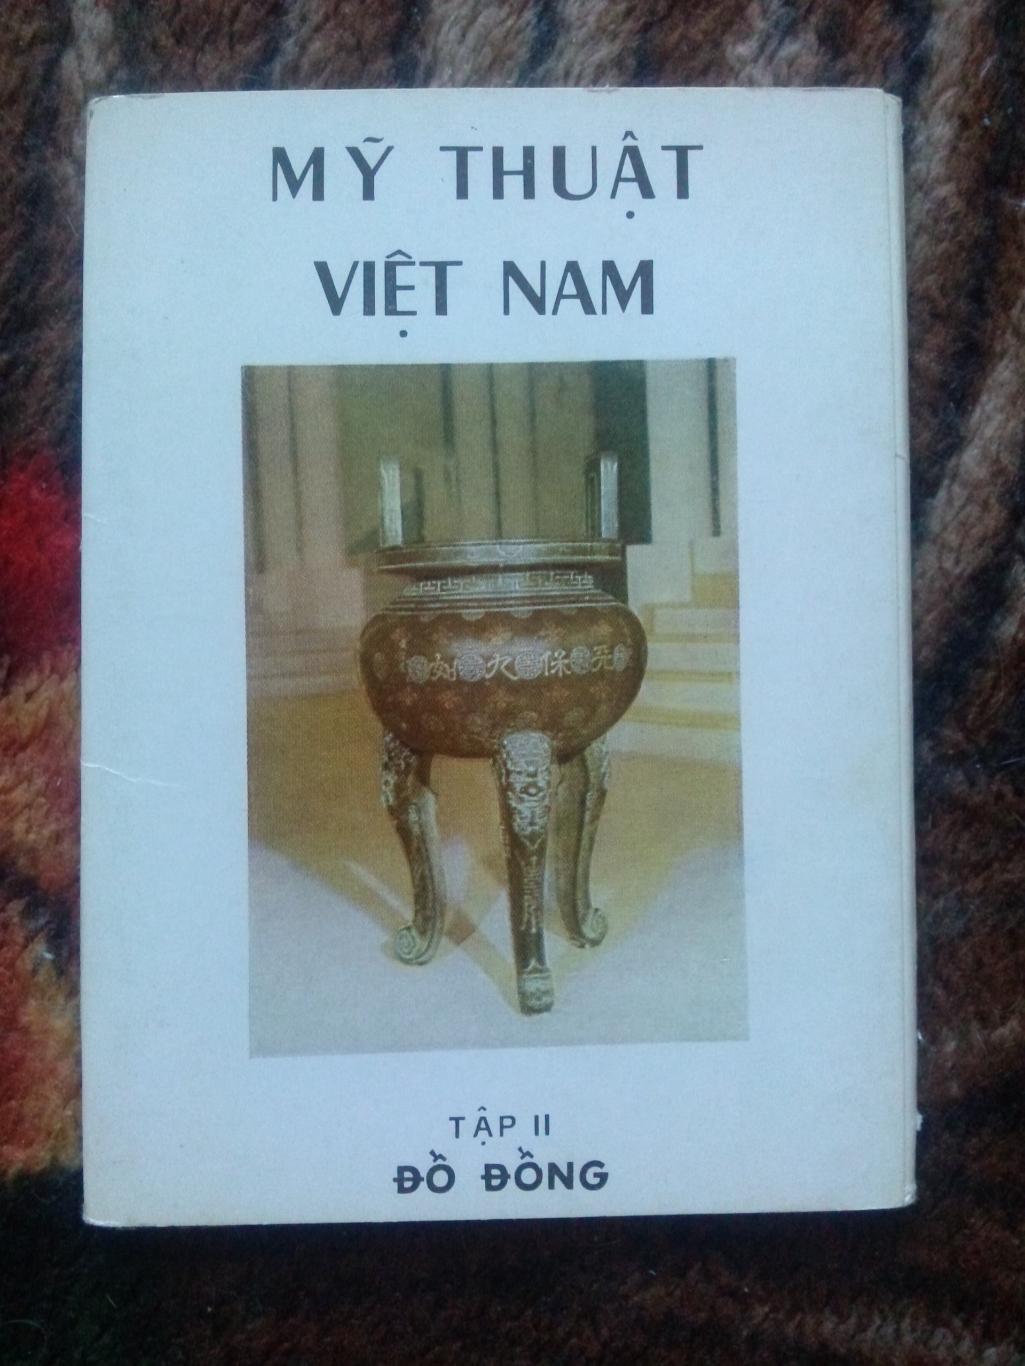 Вьетнам Vietnam : Изобразительное искусство Вьетнама (70 - е годы) полный набор